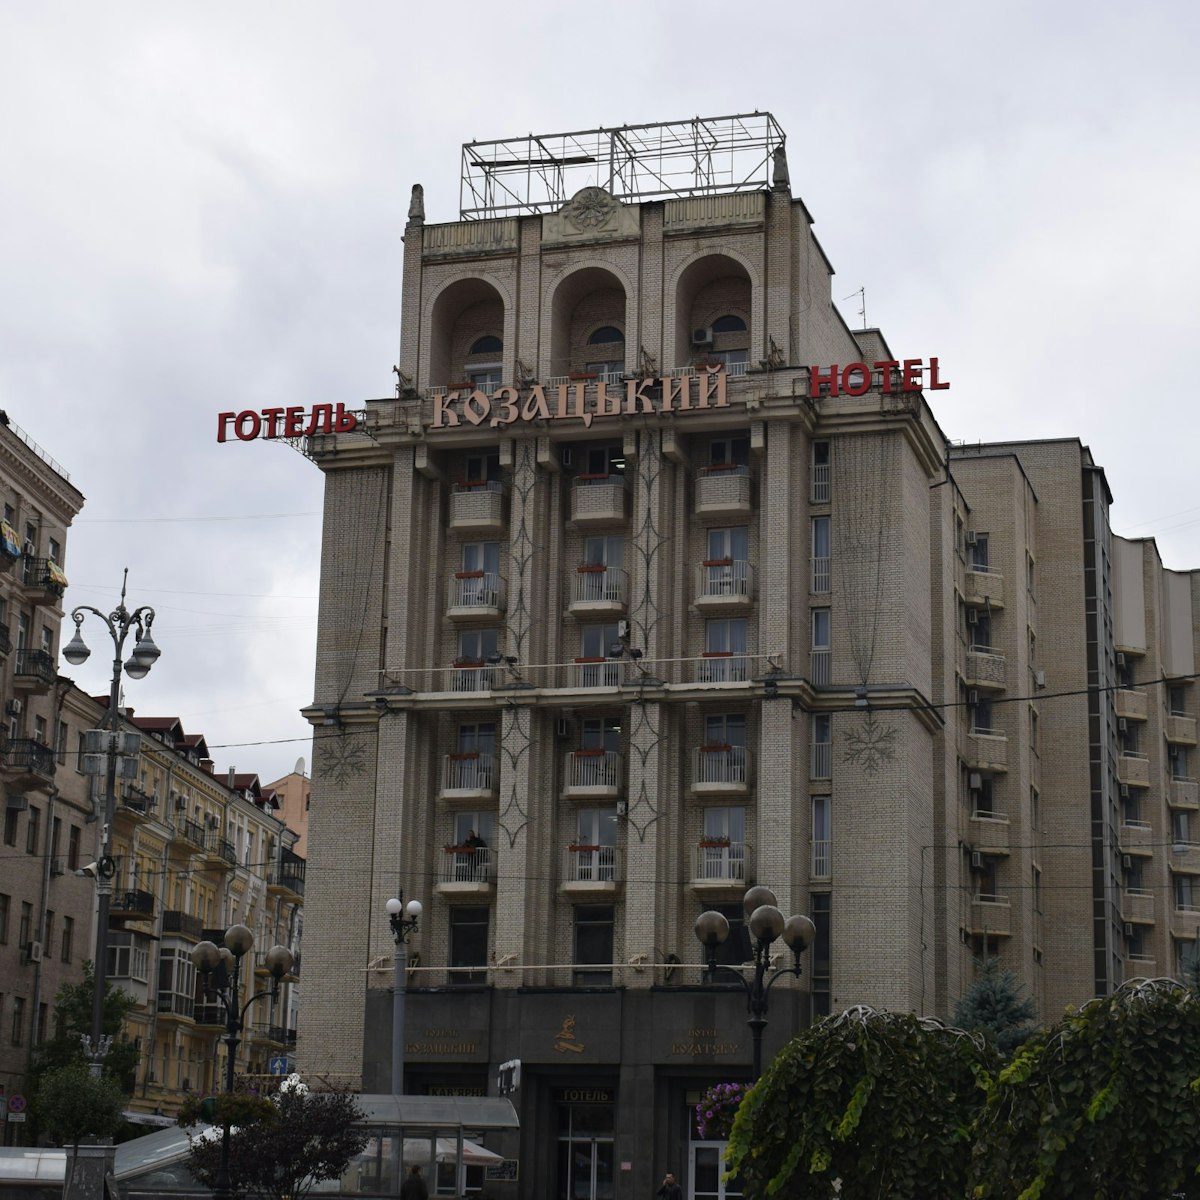 The Kozatskiy Hotel on maydan Nezalezhnosti in Kyiv